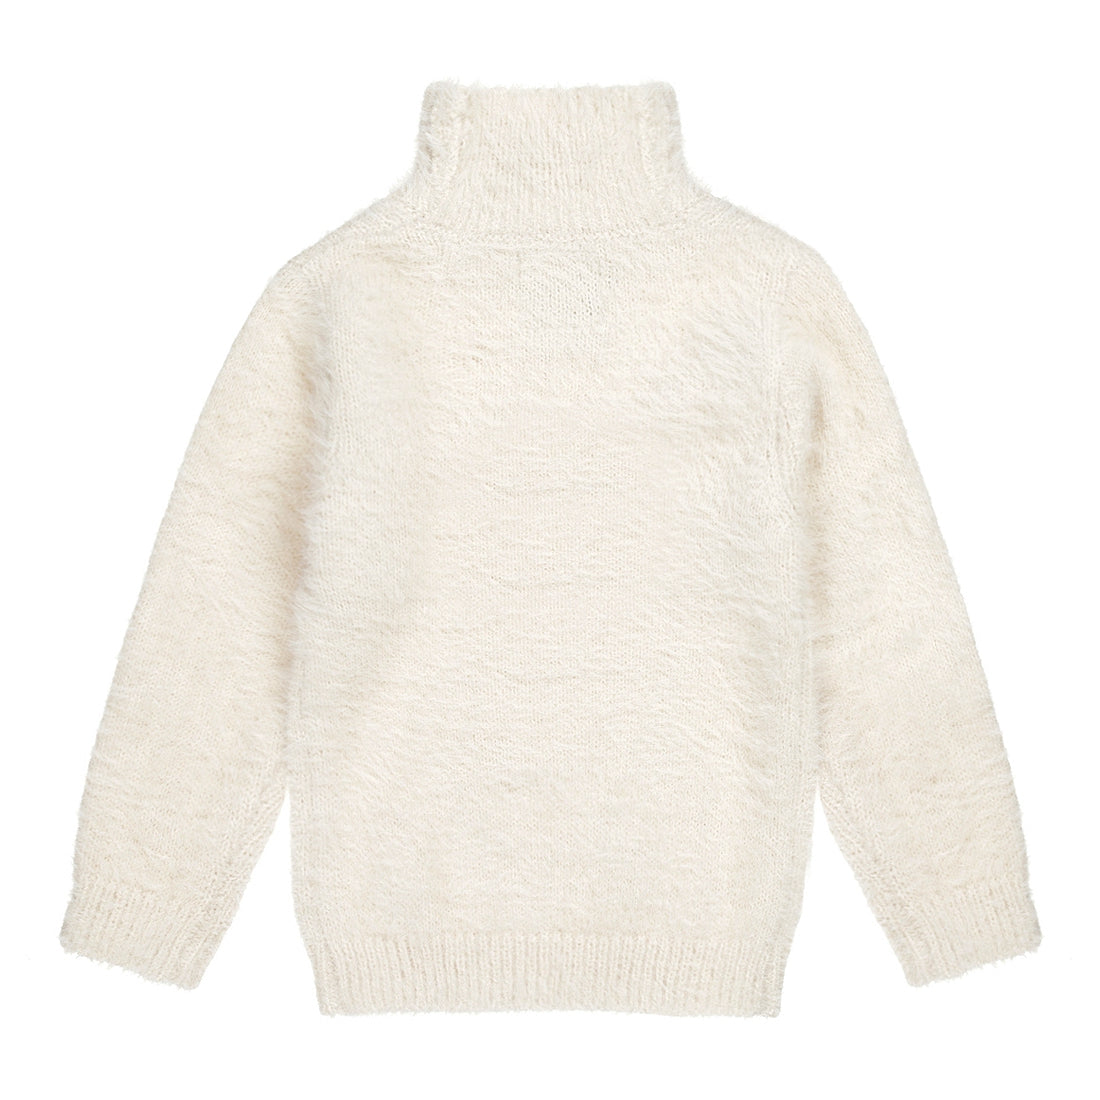 Meisjes Sweater ls with rollneck van Koko Noko in de kleur  Off white in maat 128.